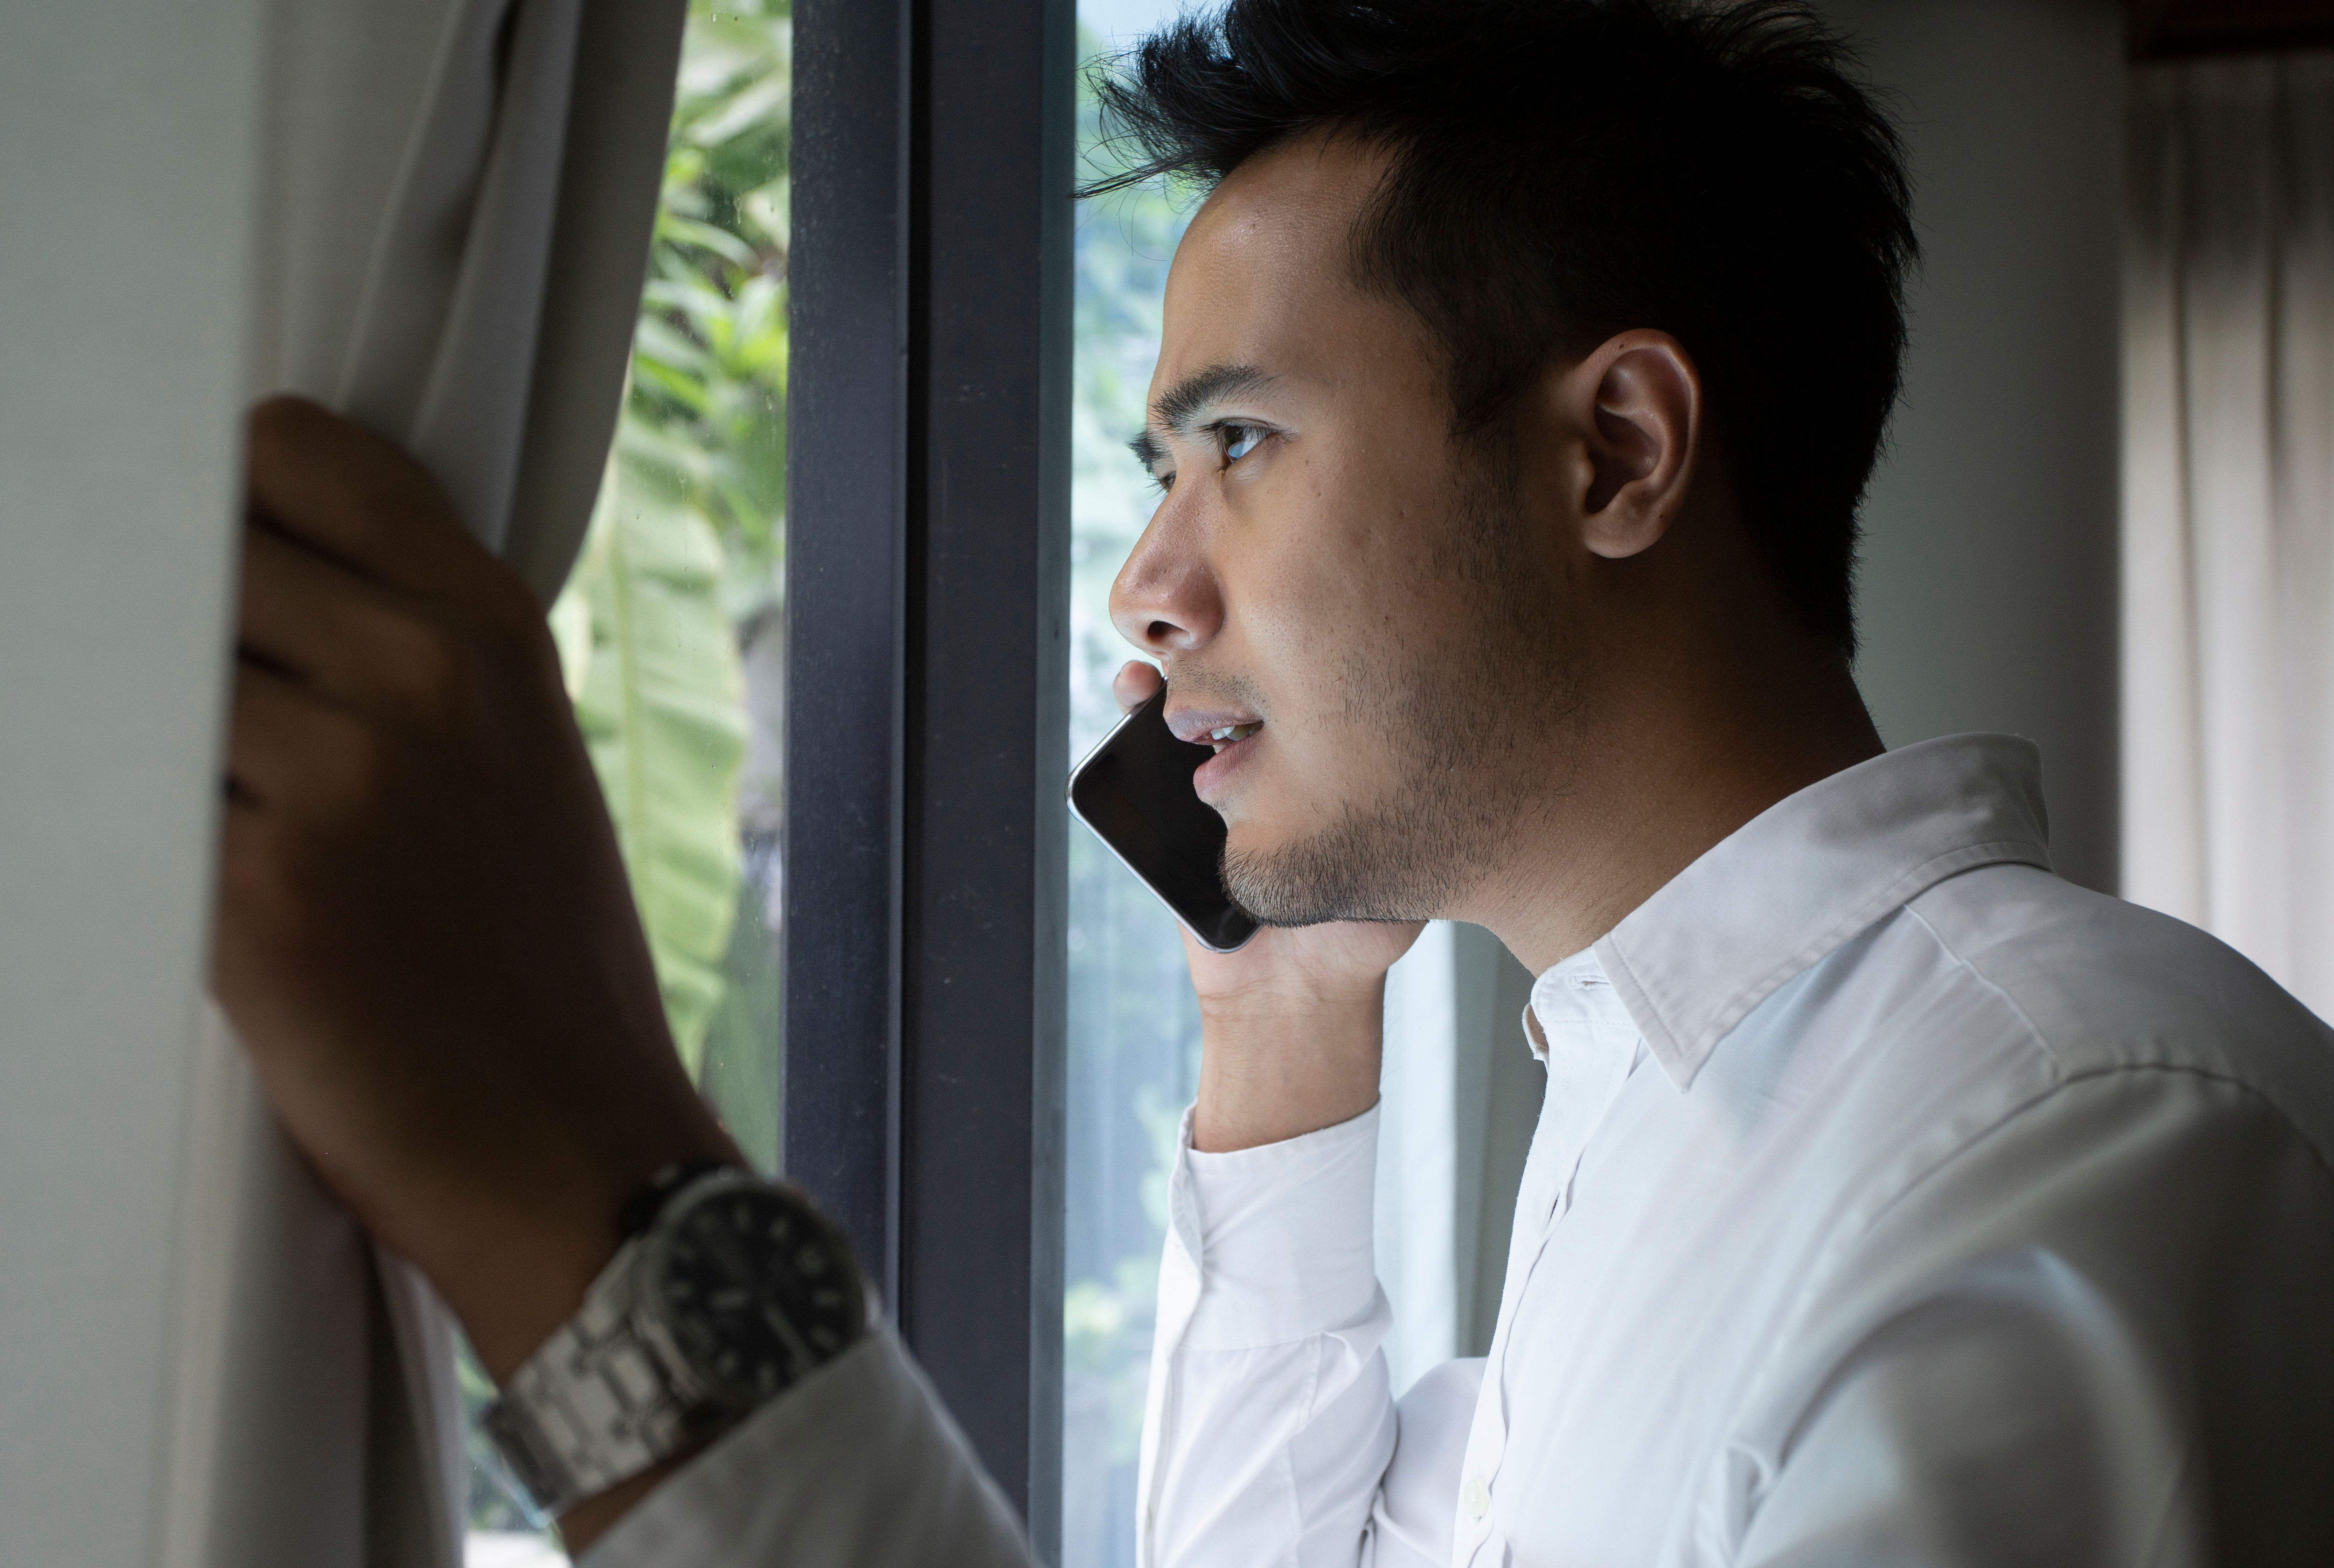 Un hombre habla por teléfono cerca de la ventana | Fuente: Shutterstock.com